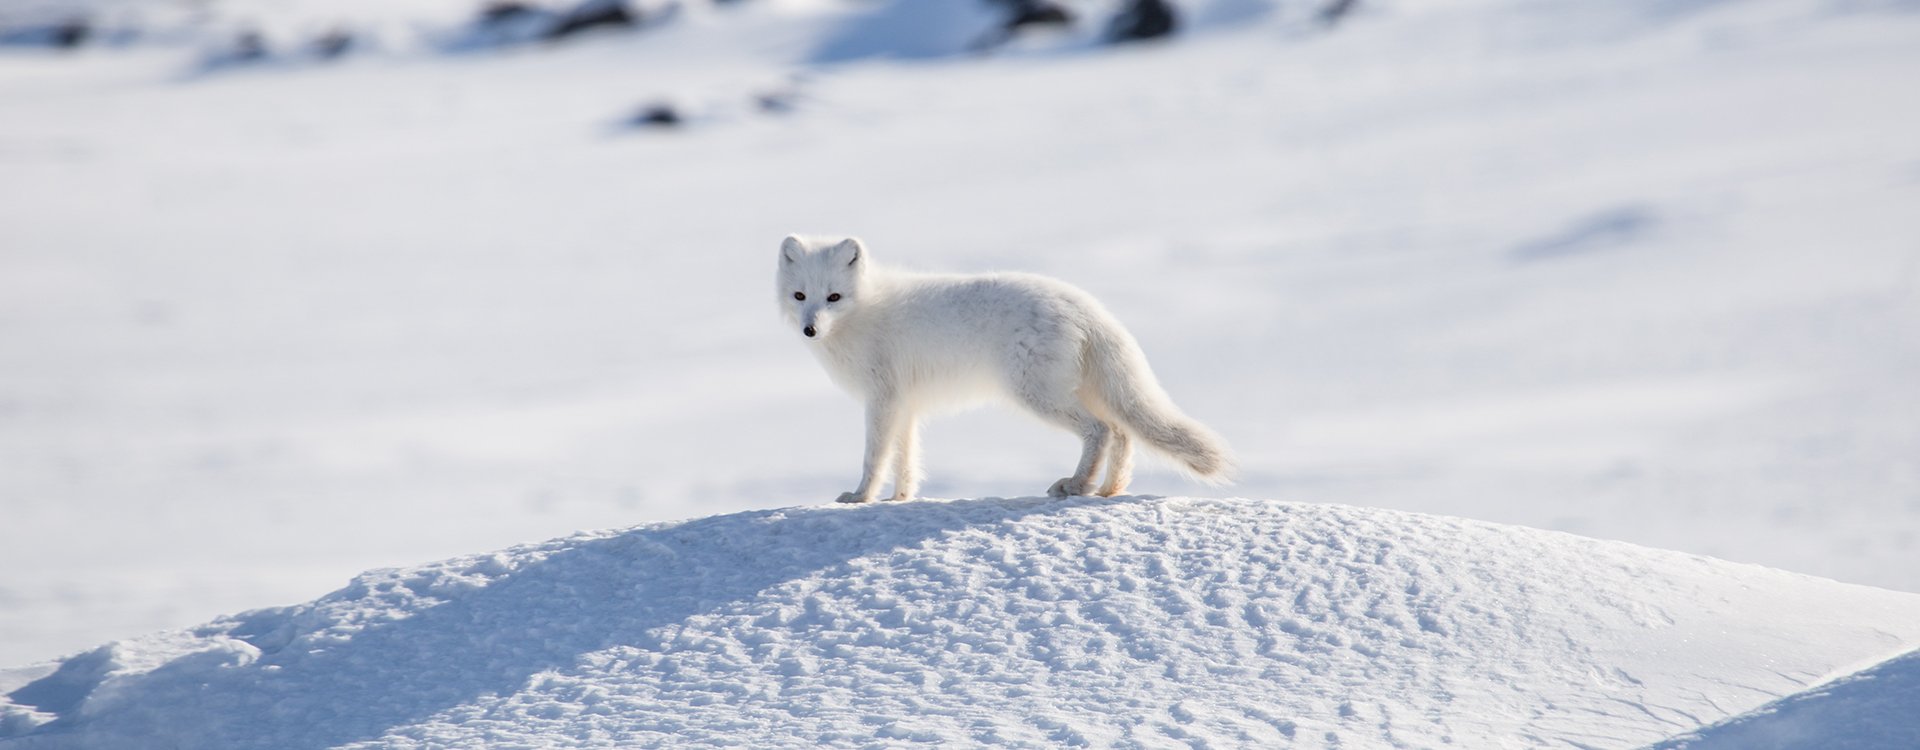 Arctic_Arctic fox